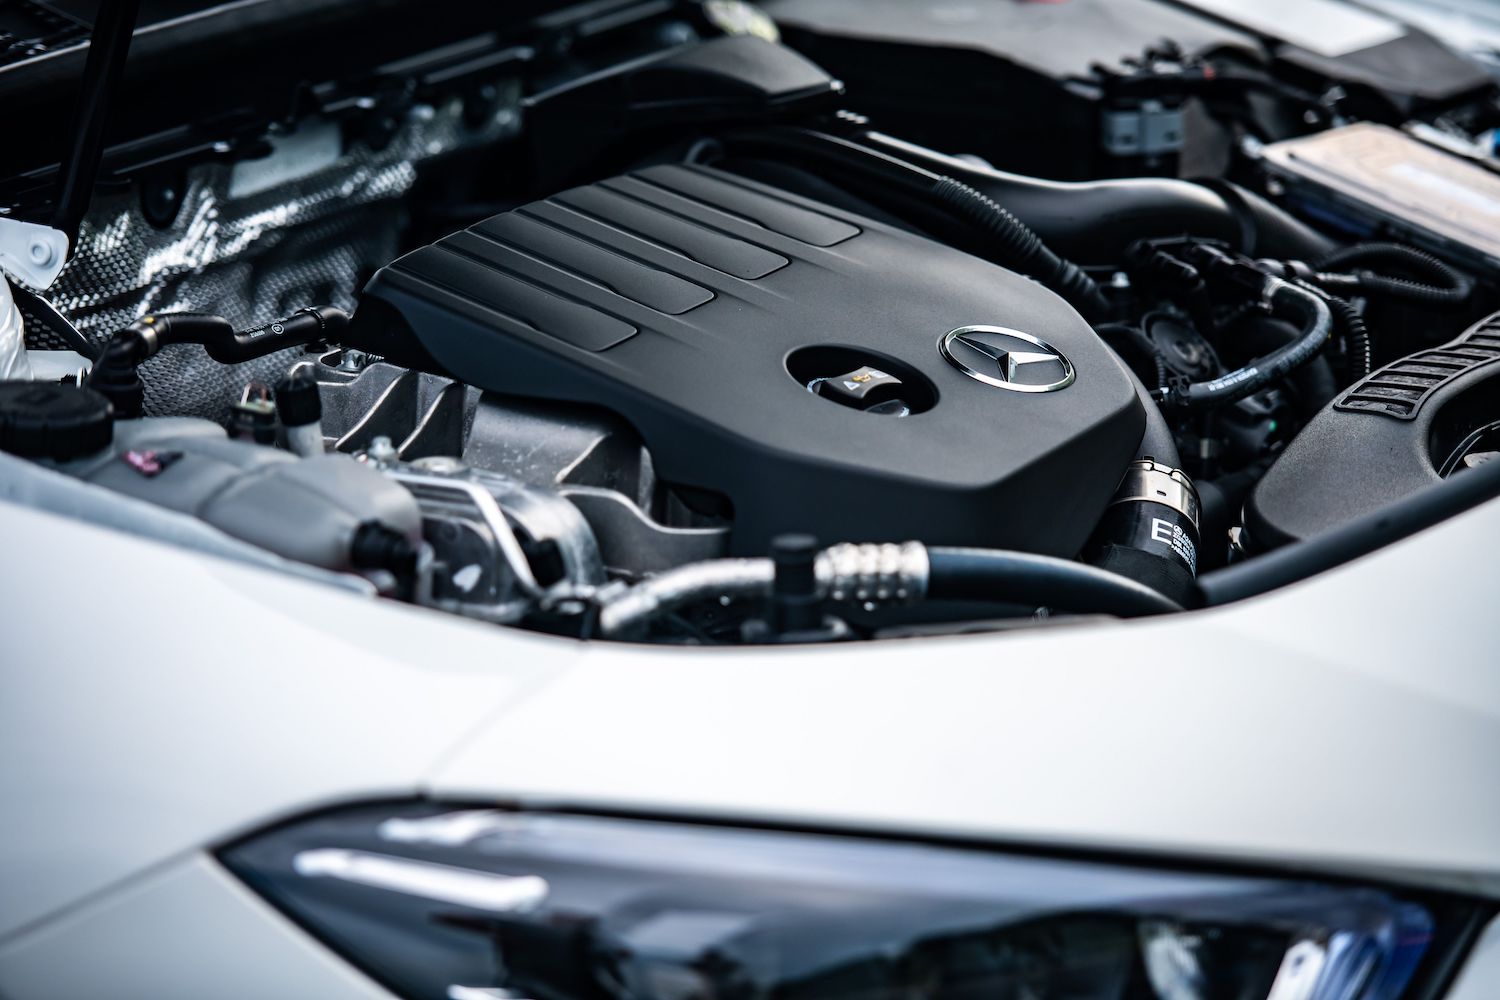 全新直列四缸渦輪增壓汽油引擎提供更佳的動力及效能表現。